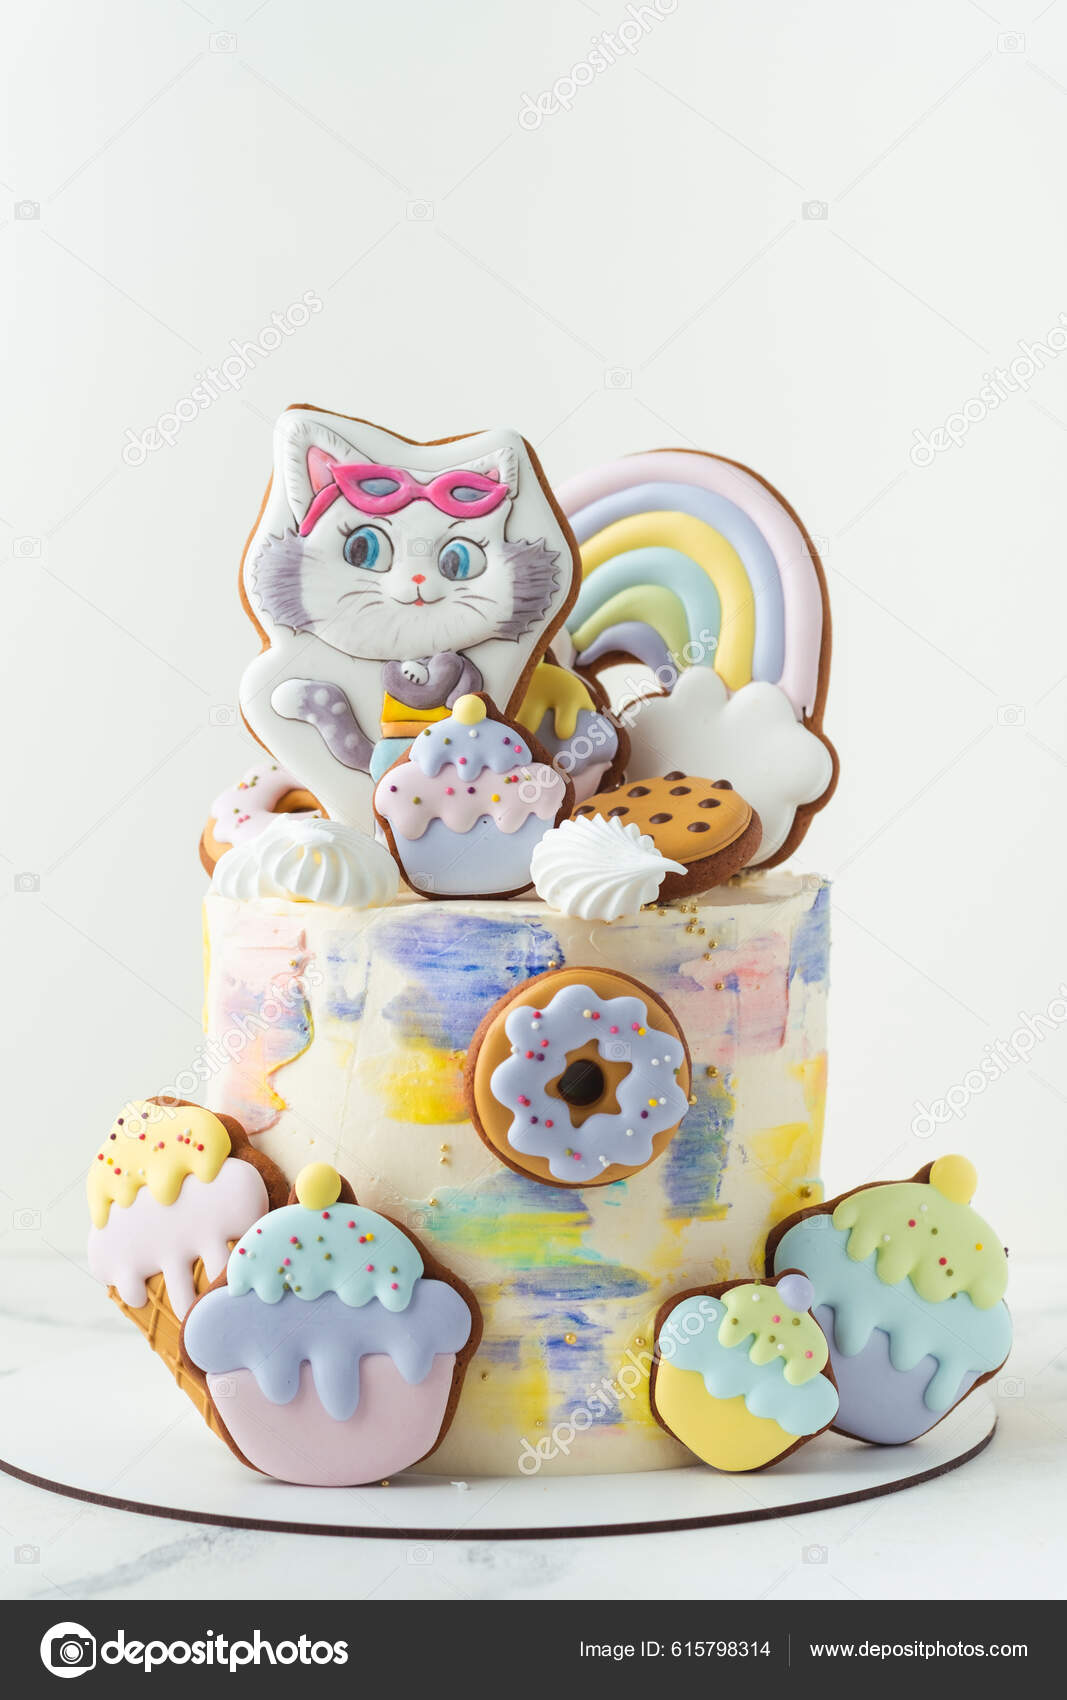 Festa infantil: bolos decorados e temáticos